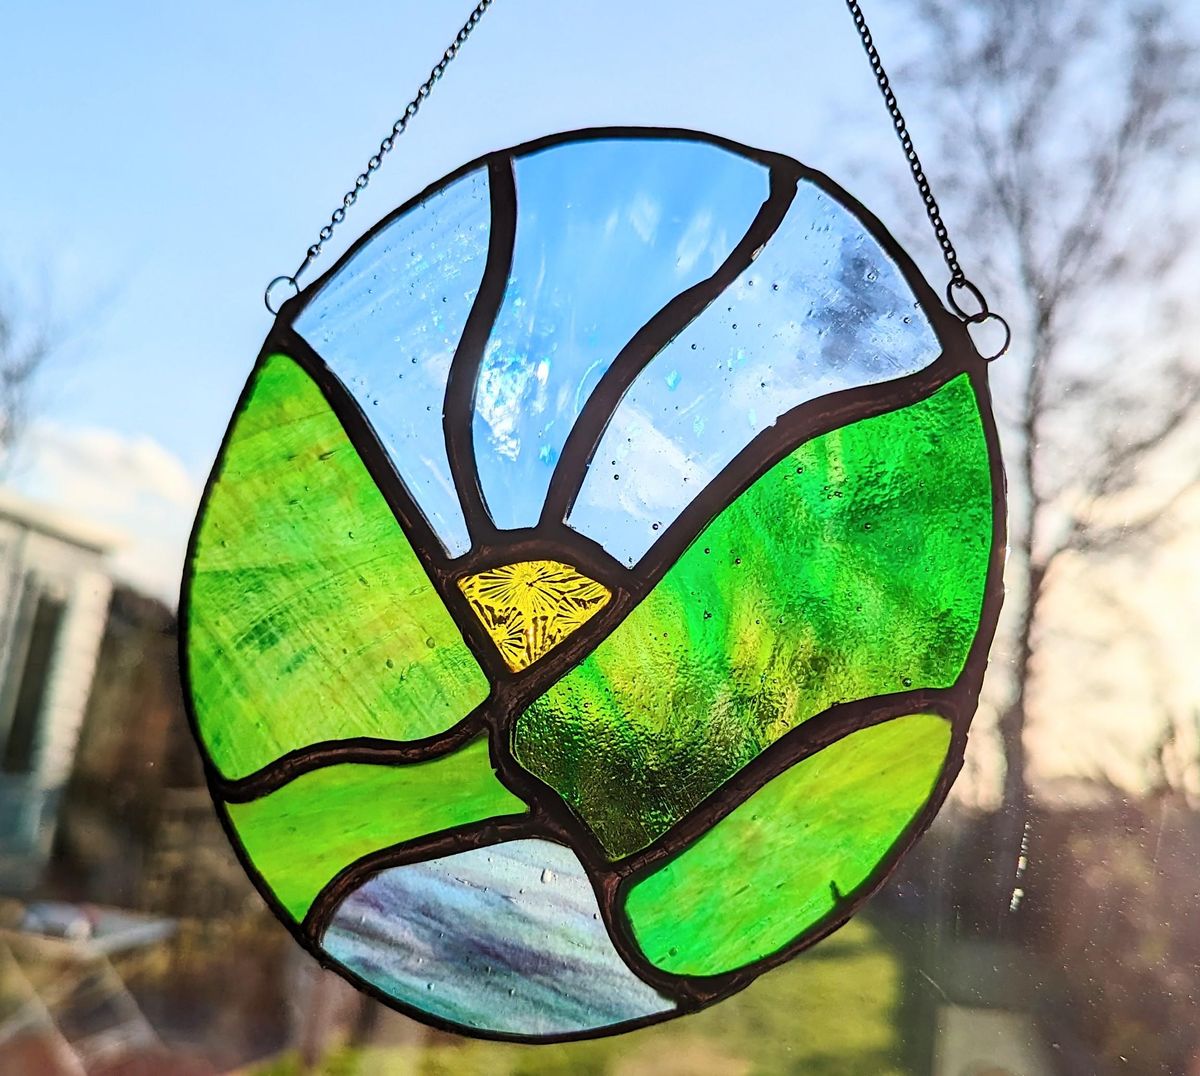 Stained glass suncatcher workshop p.m. (EWC 2806)